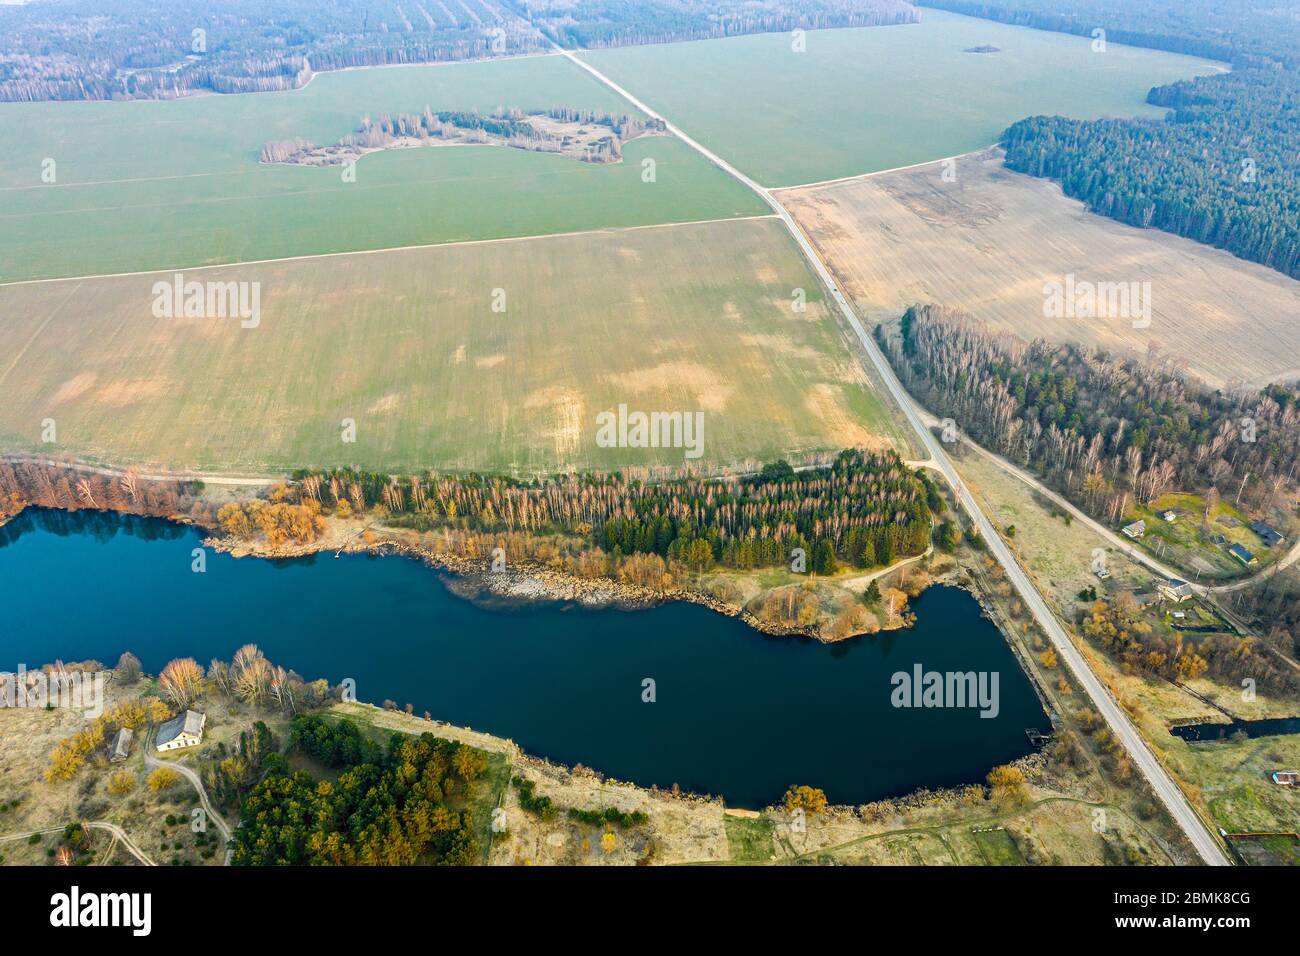 paysage de campagne pittoresque. lac bleu, champs verts et forêt à l'horizon. vue panoramique aérienne Banque D'Images